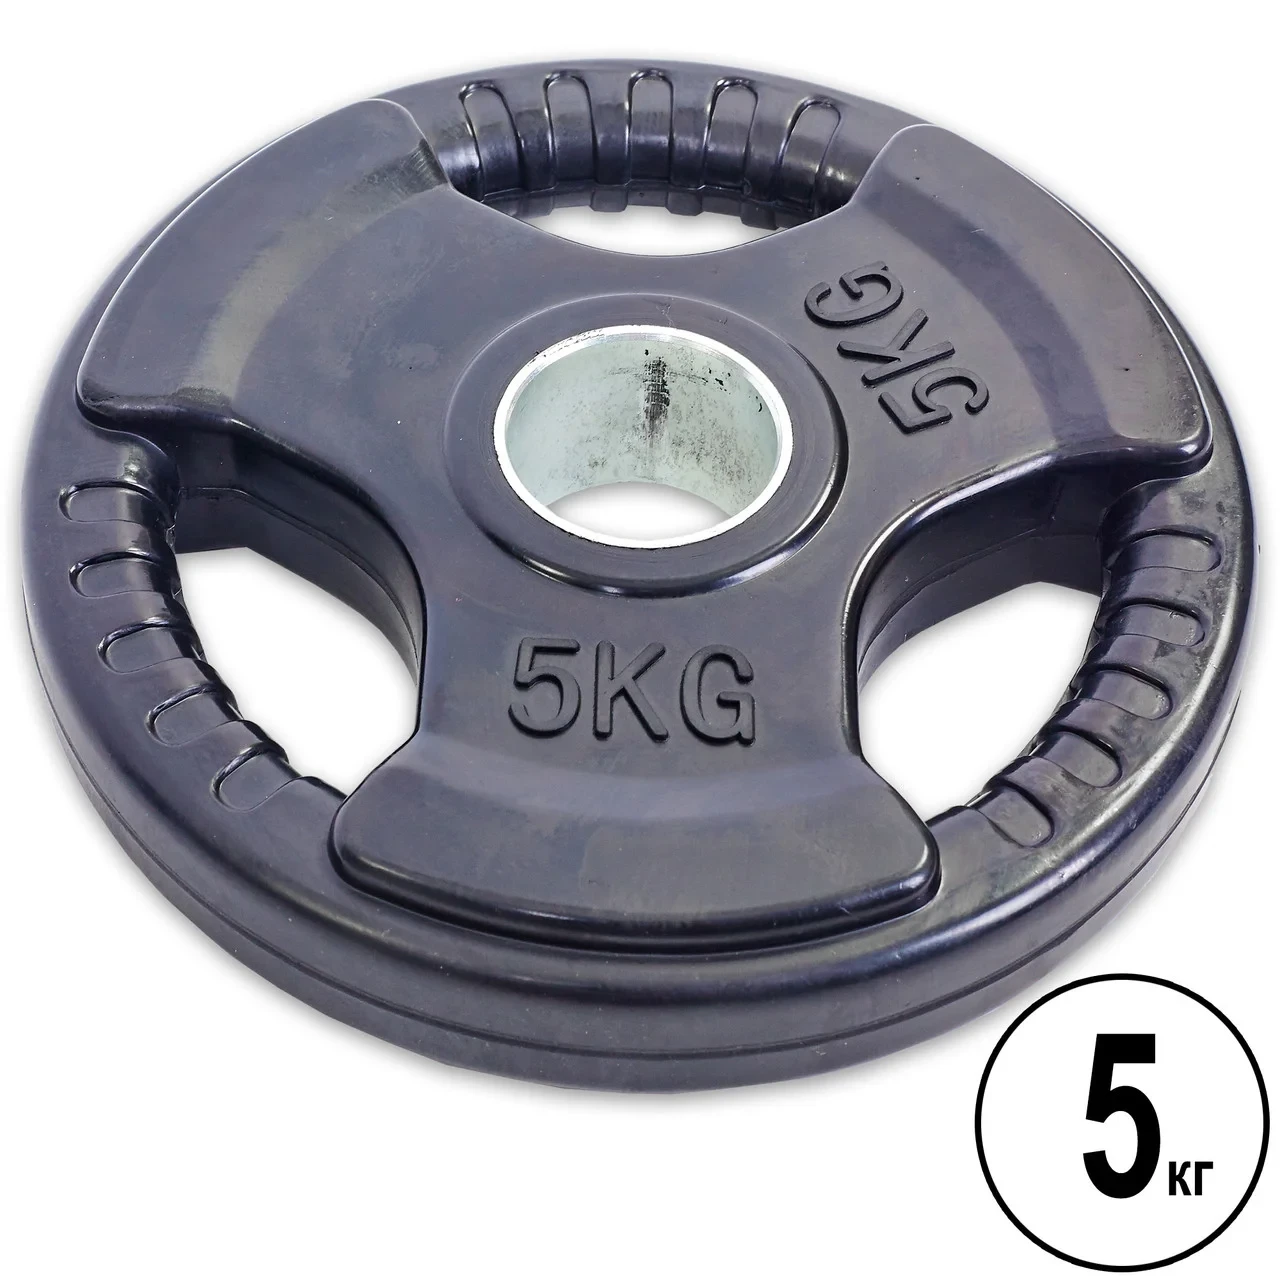 Олимпийский диск евро-классик с тройным хватом, блины для штанги D=50мм. (5+5кг)